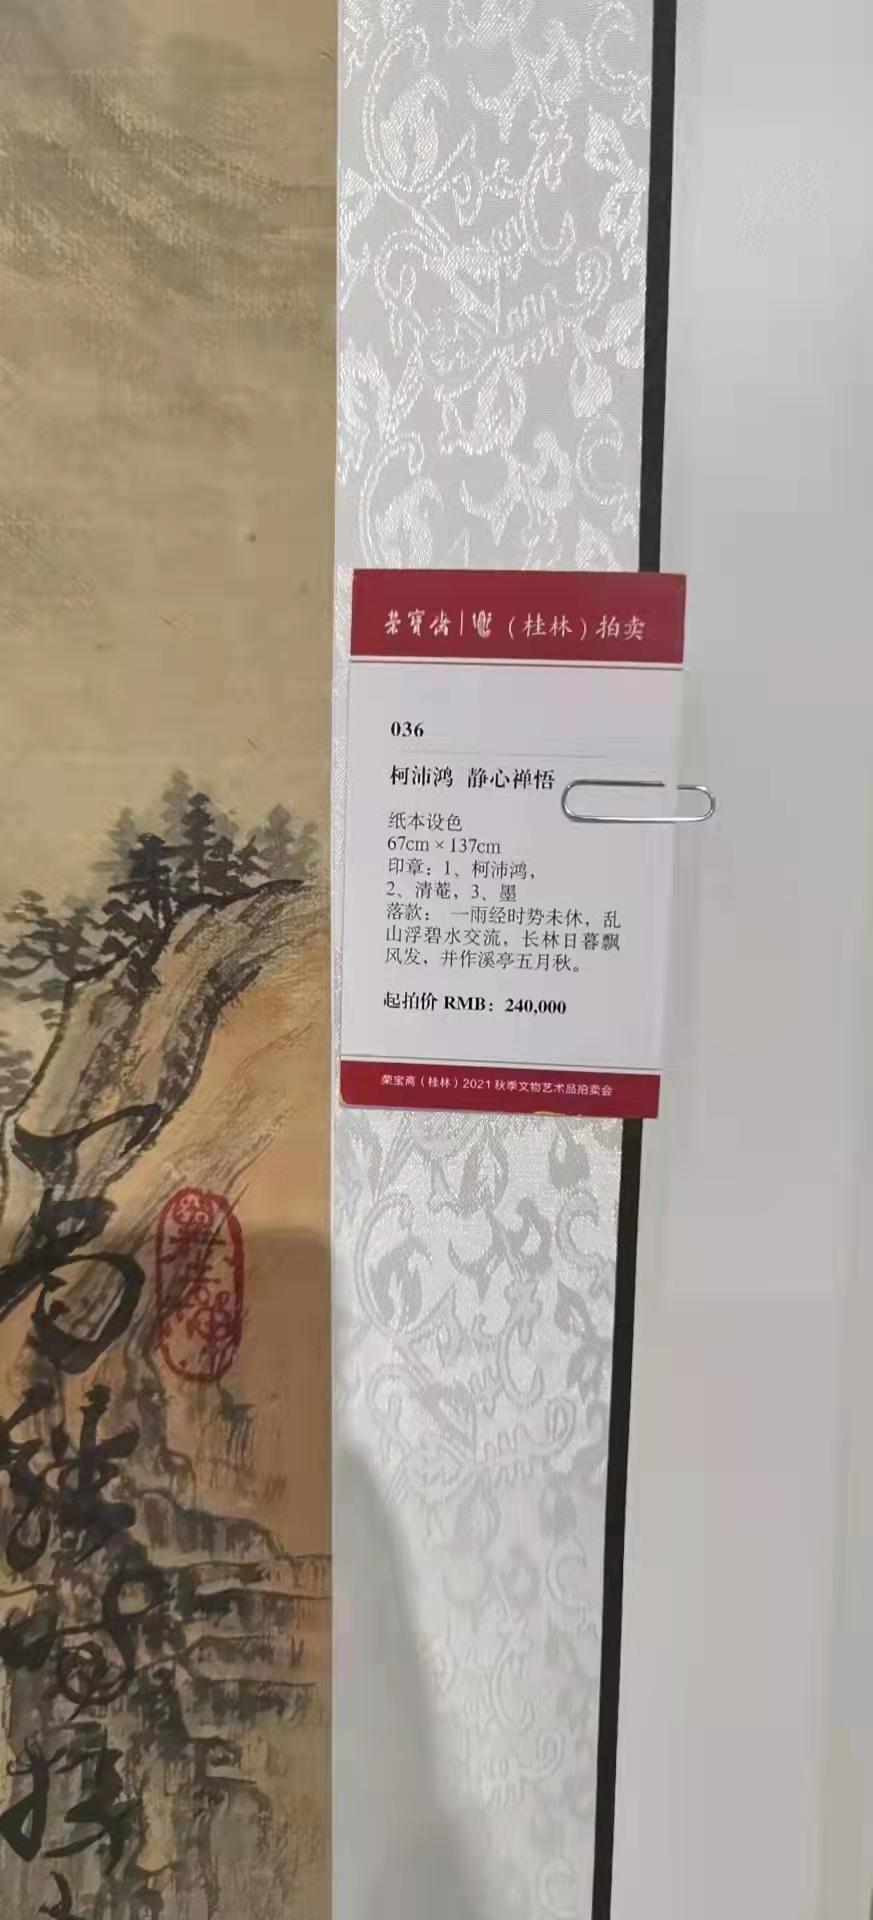 柯沛鴻«福以善招»、«靜心禪悟»等作品于桂林荣宝斋预展高价拍卖